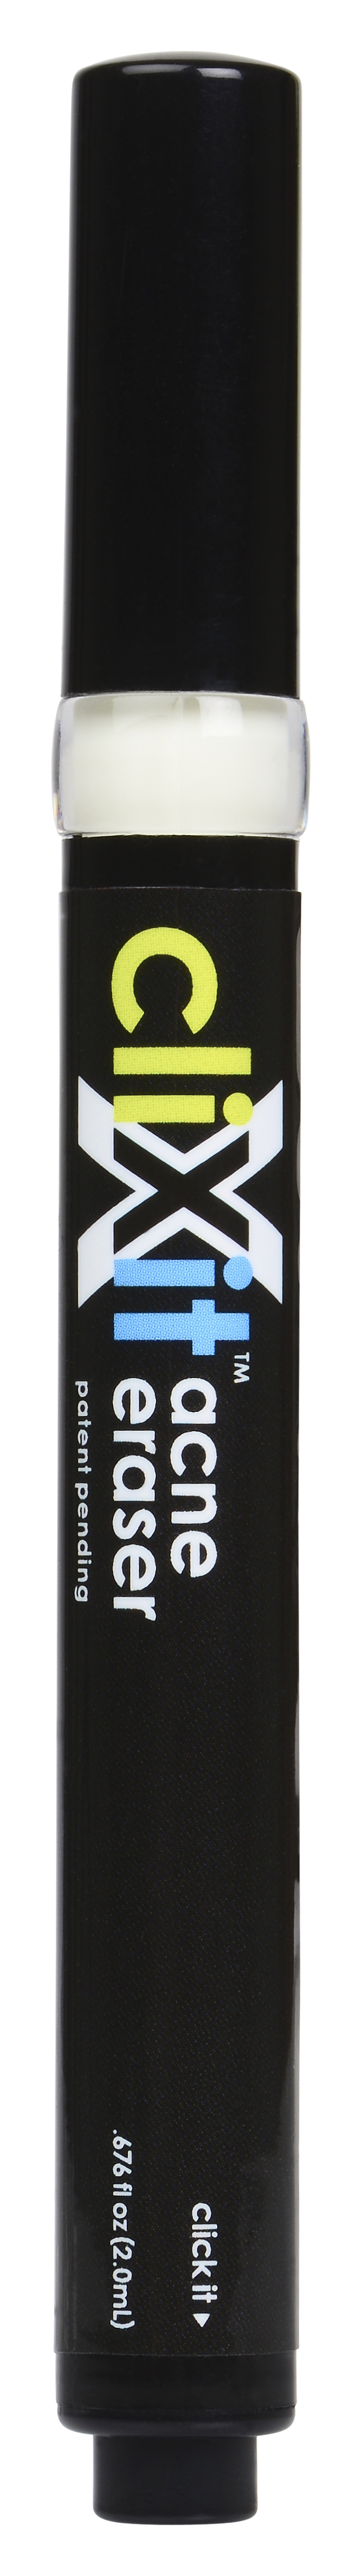 Clixit Acne Eraser